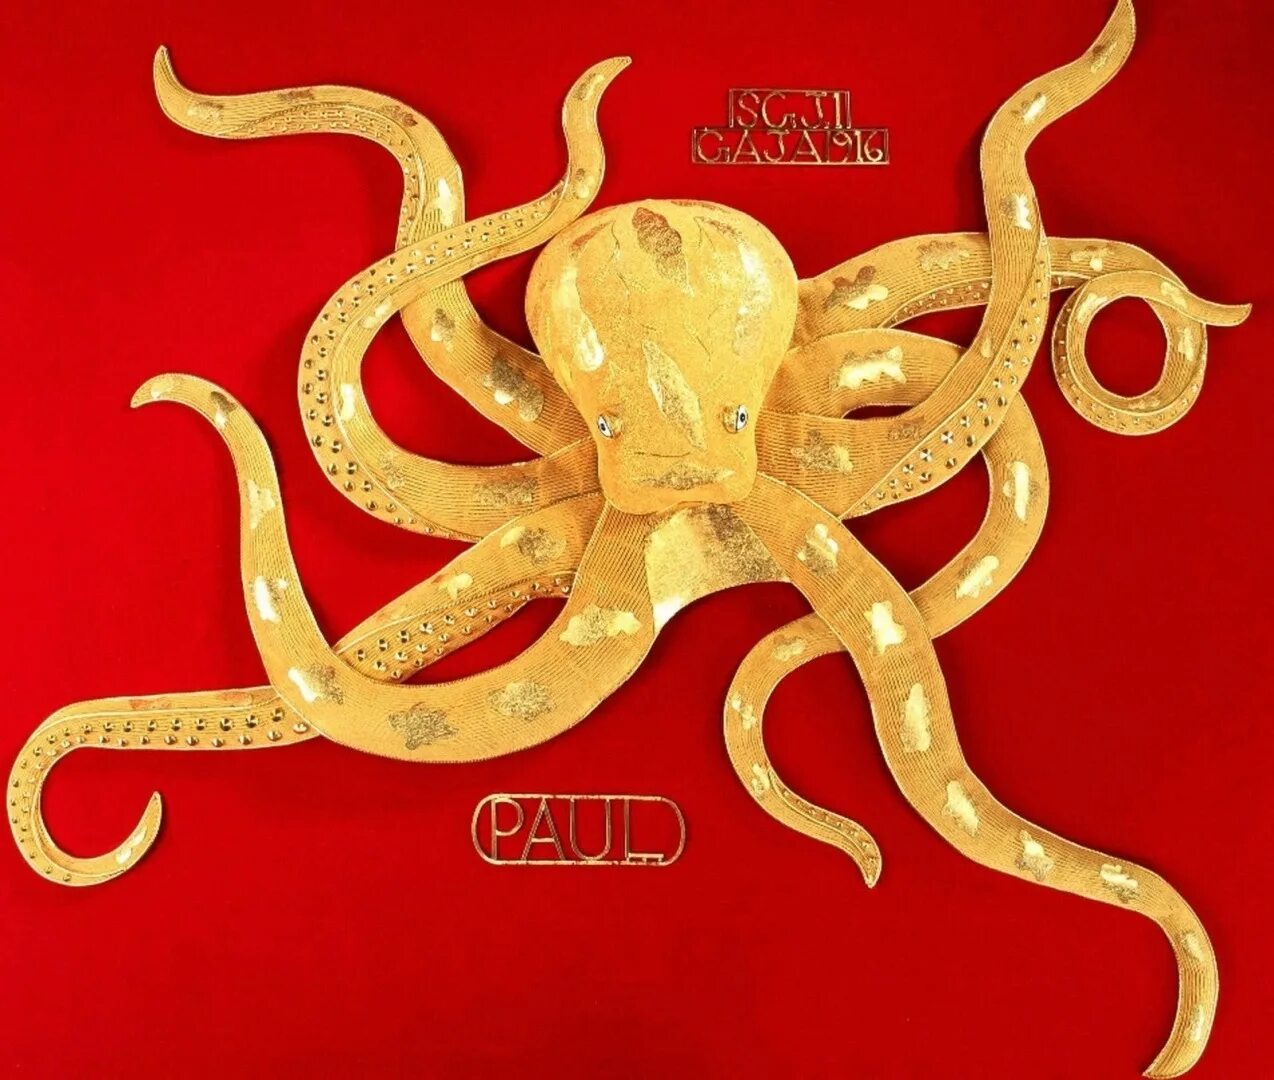 Octopus Paul. Осьминог предсказатель. Известный осьминог Пауль. Осьминог Пауль икона ставочников.